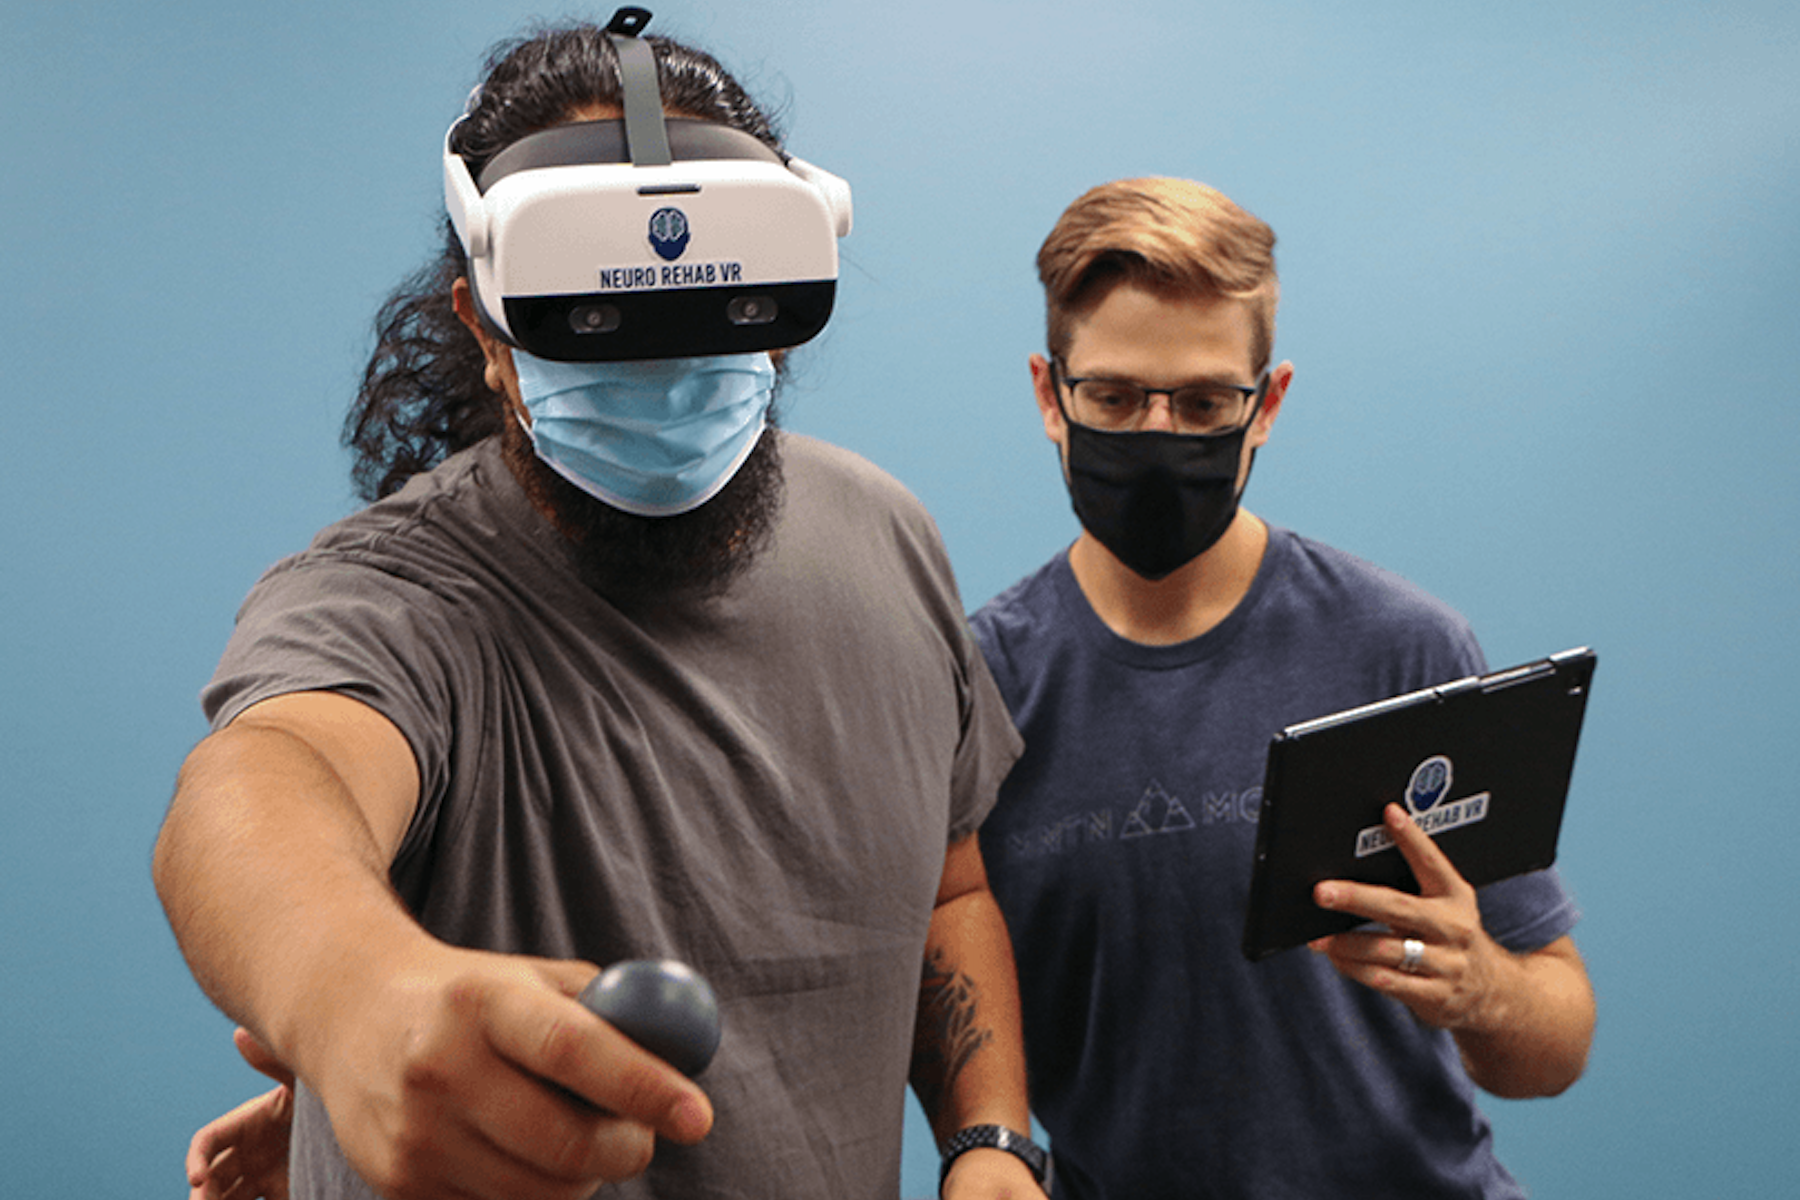 Vr решения. VR виртуальная реальность. Человек в виртуальной реальности. Виртуальная реальность в реабилитации. VR технологии в реабилитации.